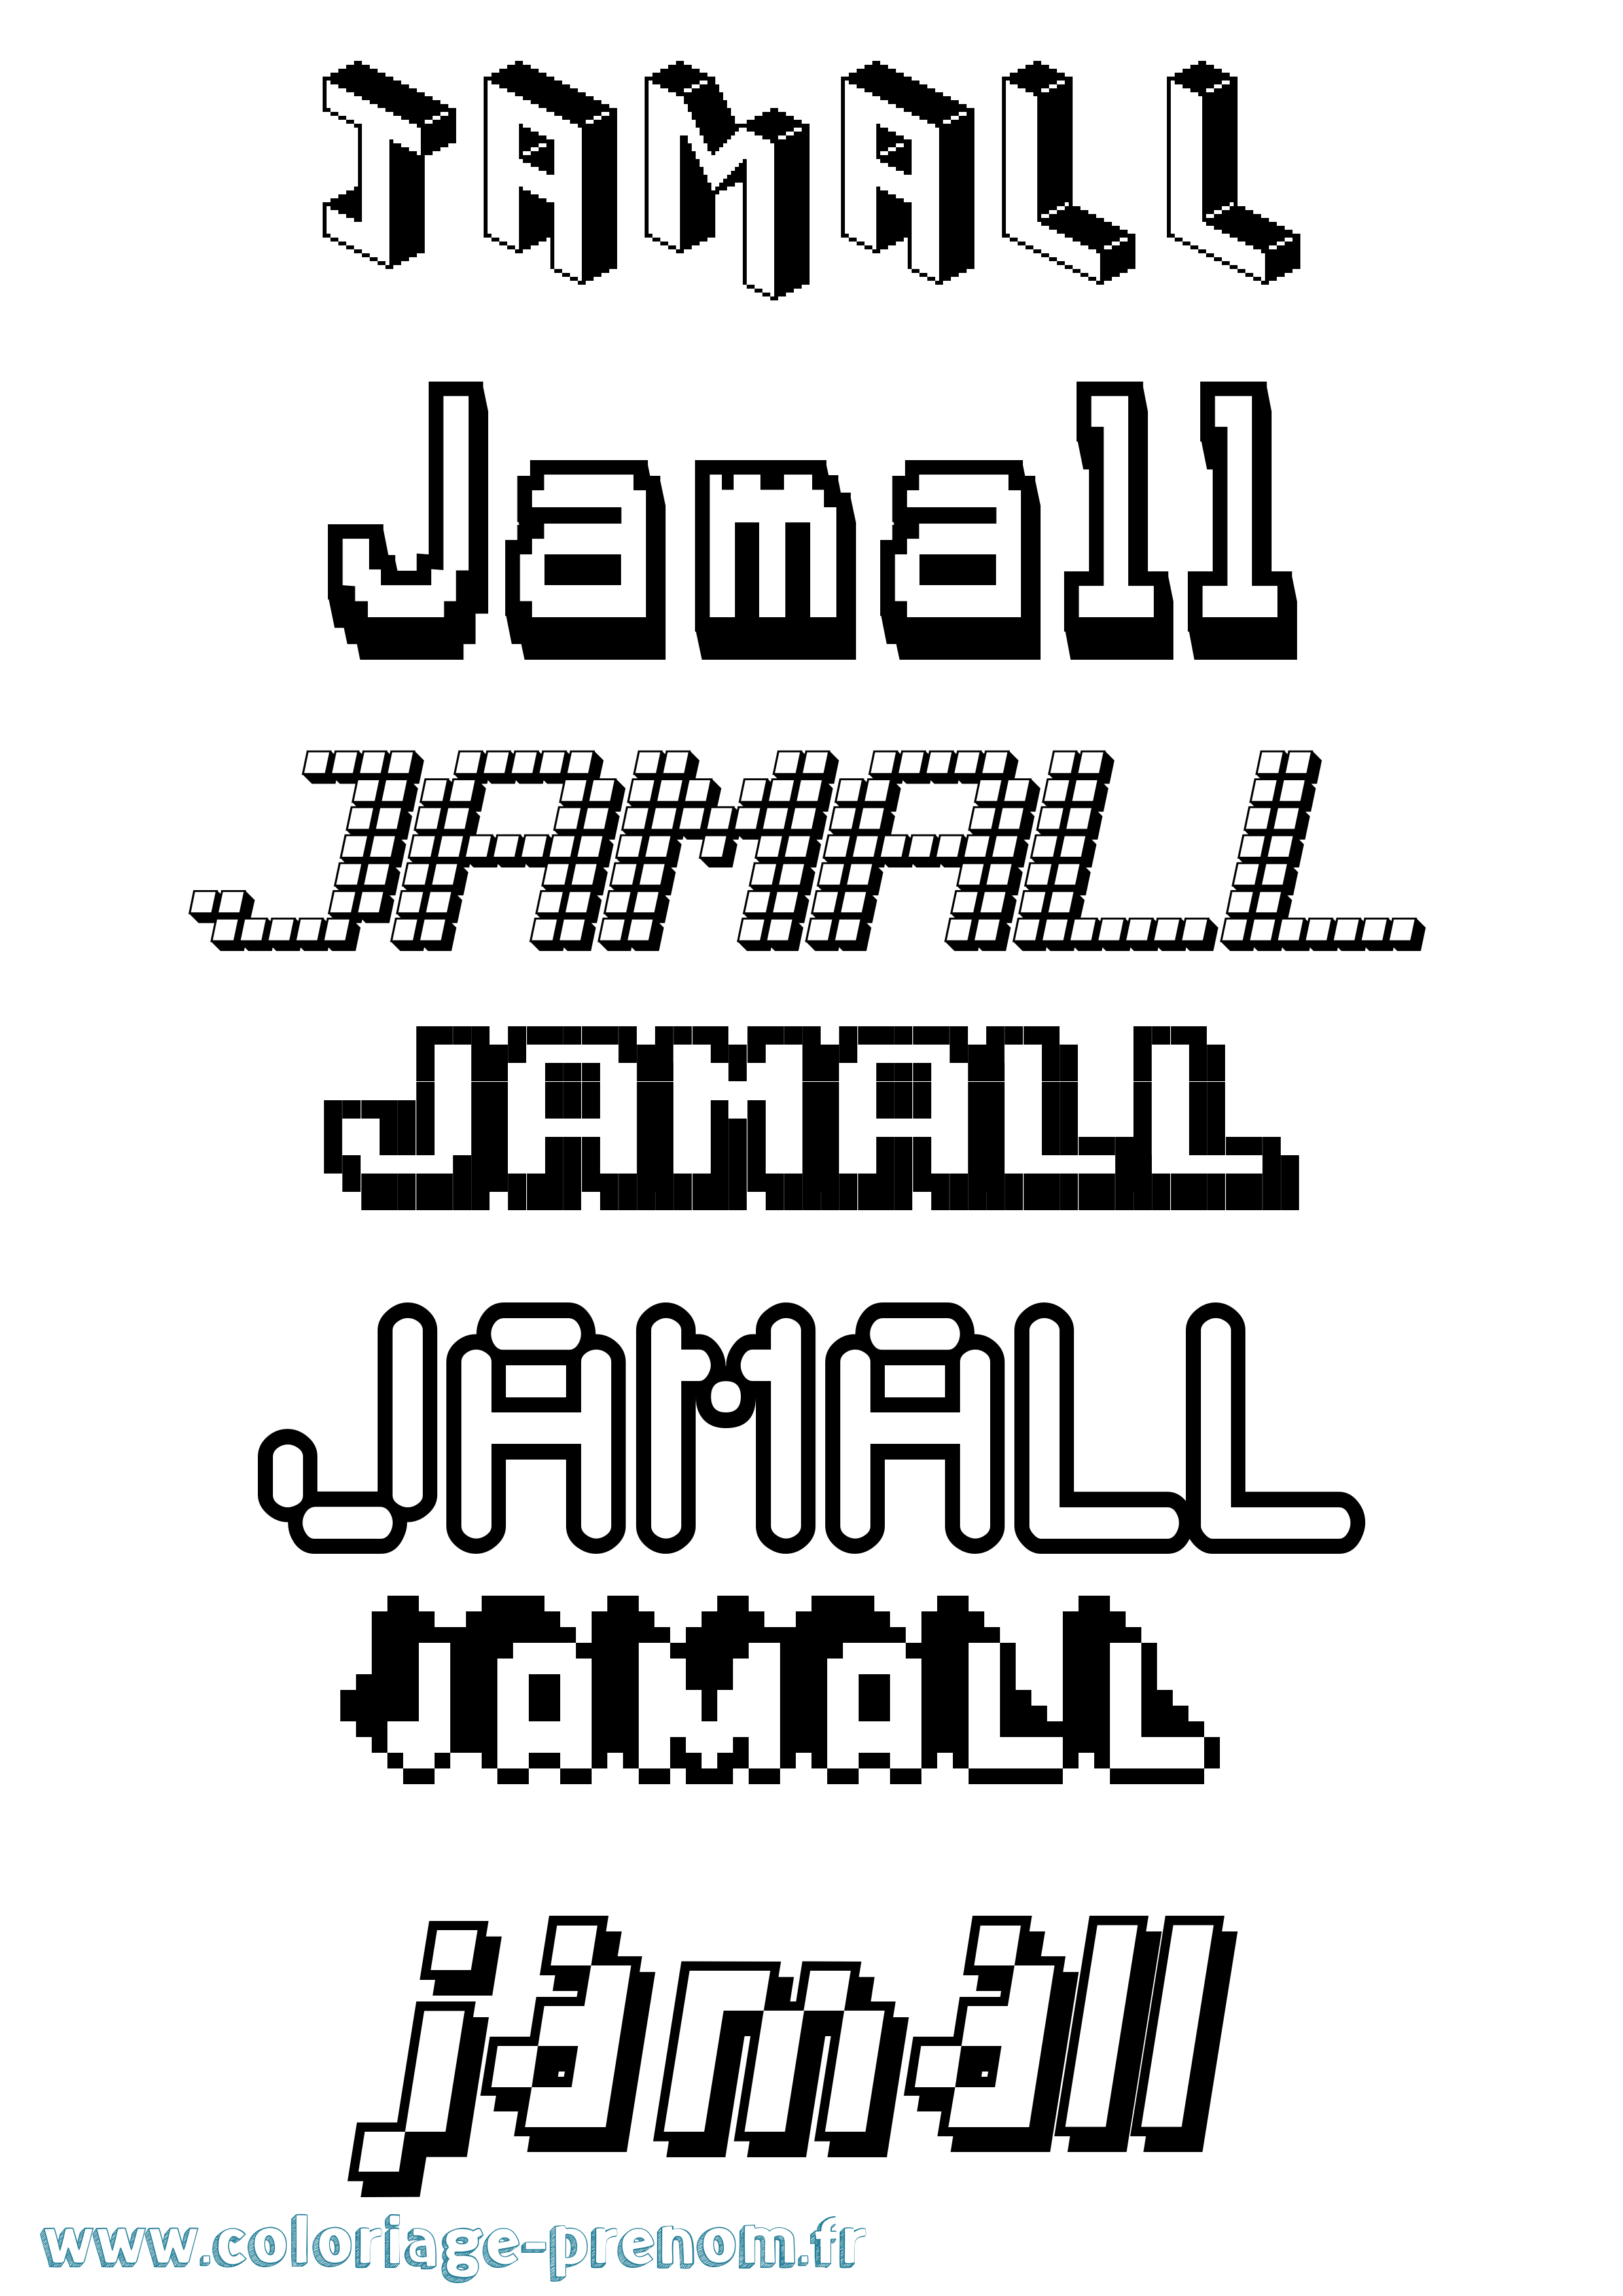 Coloriage prénom Jamall Pixel